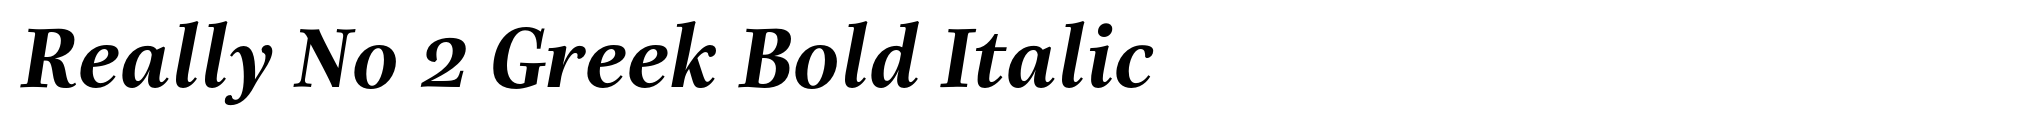 Really No 2 Greek Bold Italic image